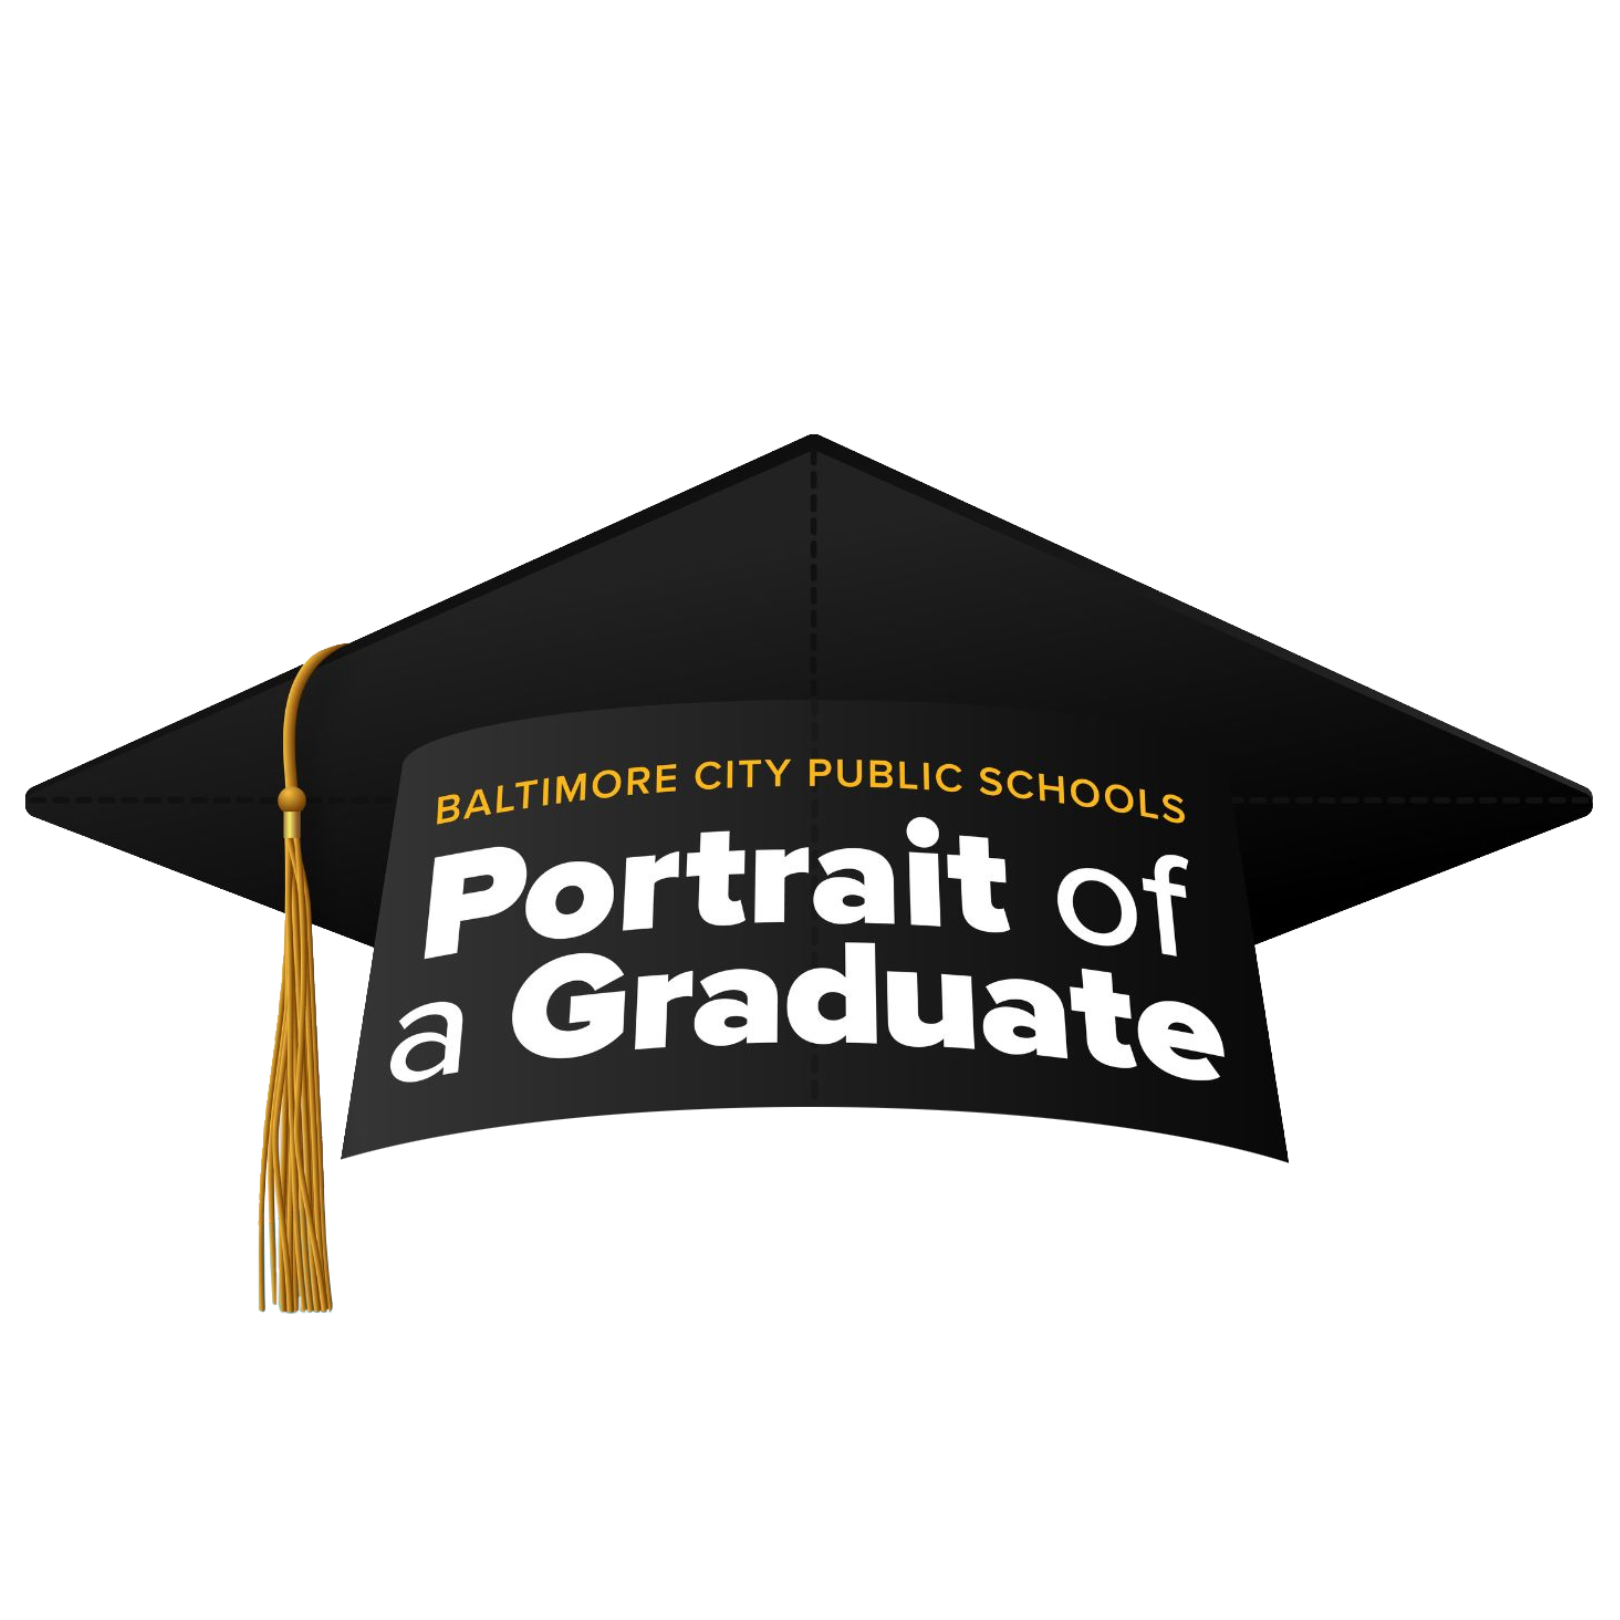 Portrait of a Graduate graphic